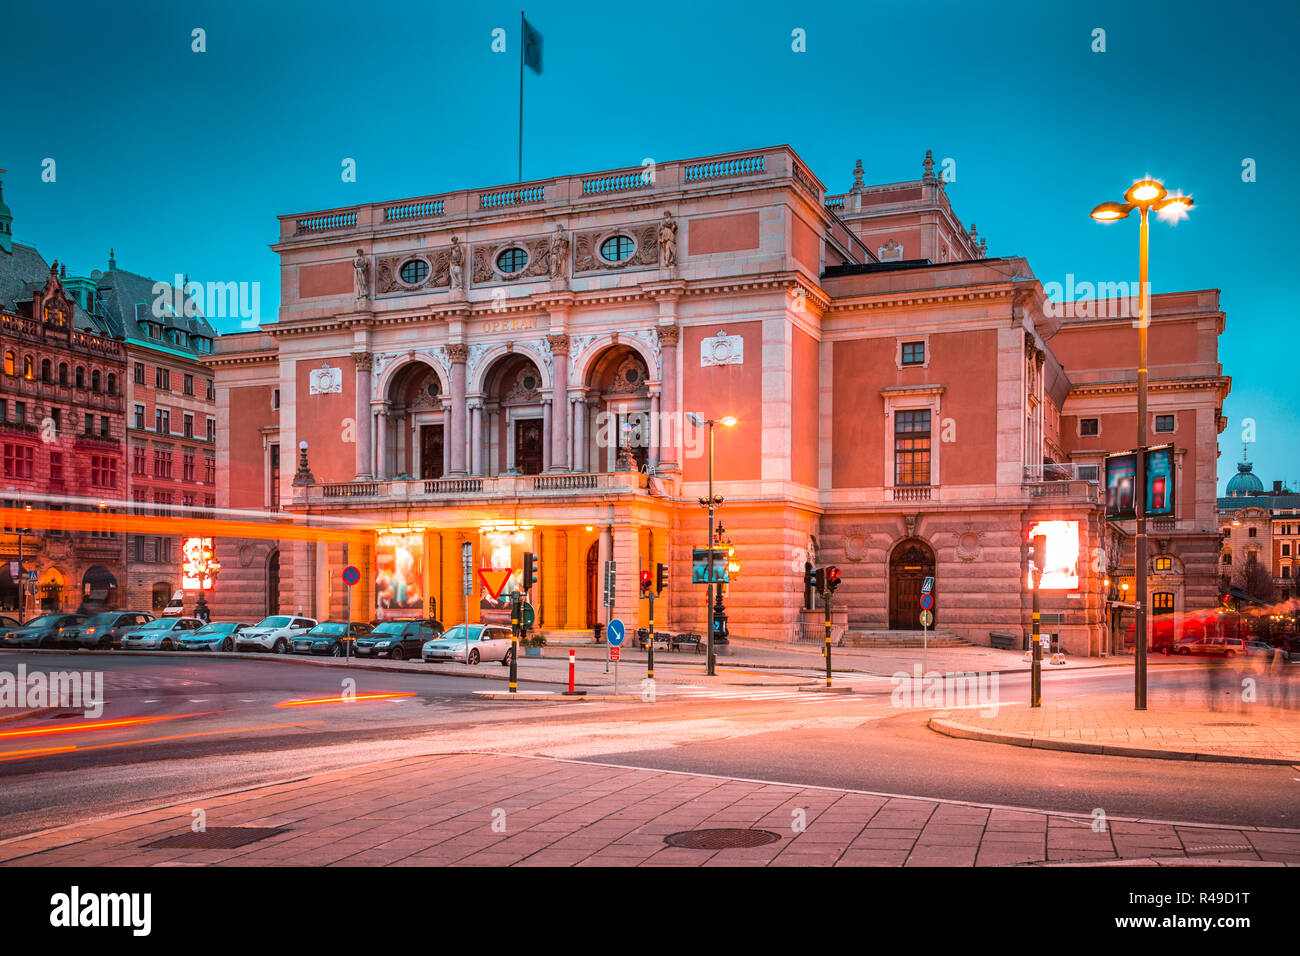 Belle vue du célèbre Opéra royal de Suède (Kungliga Operan) dans le centre de Stockholm allumé au crépuscule, en Suède, Scandinavie Banque D'Images